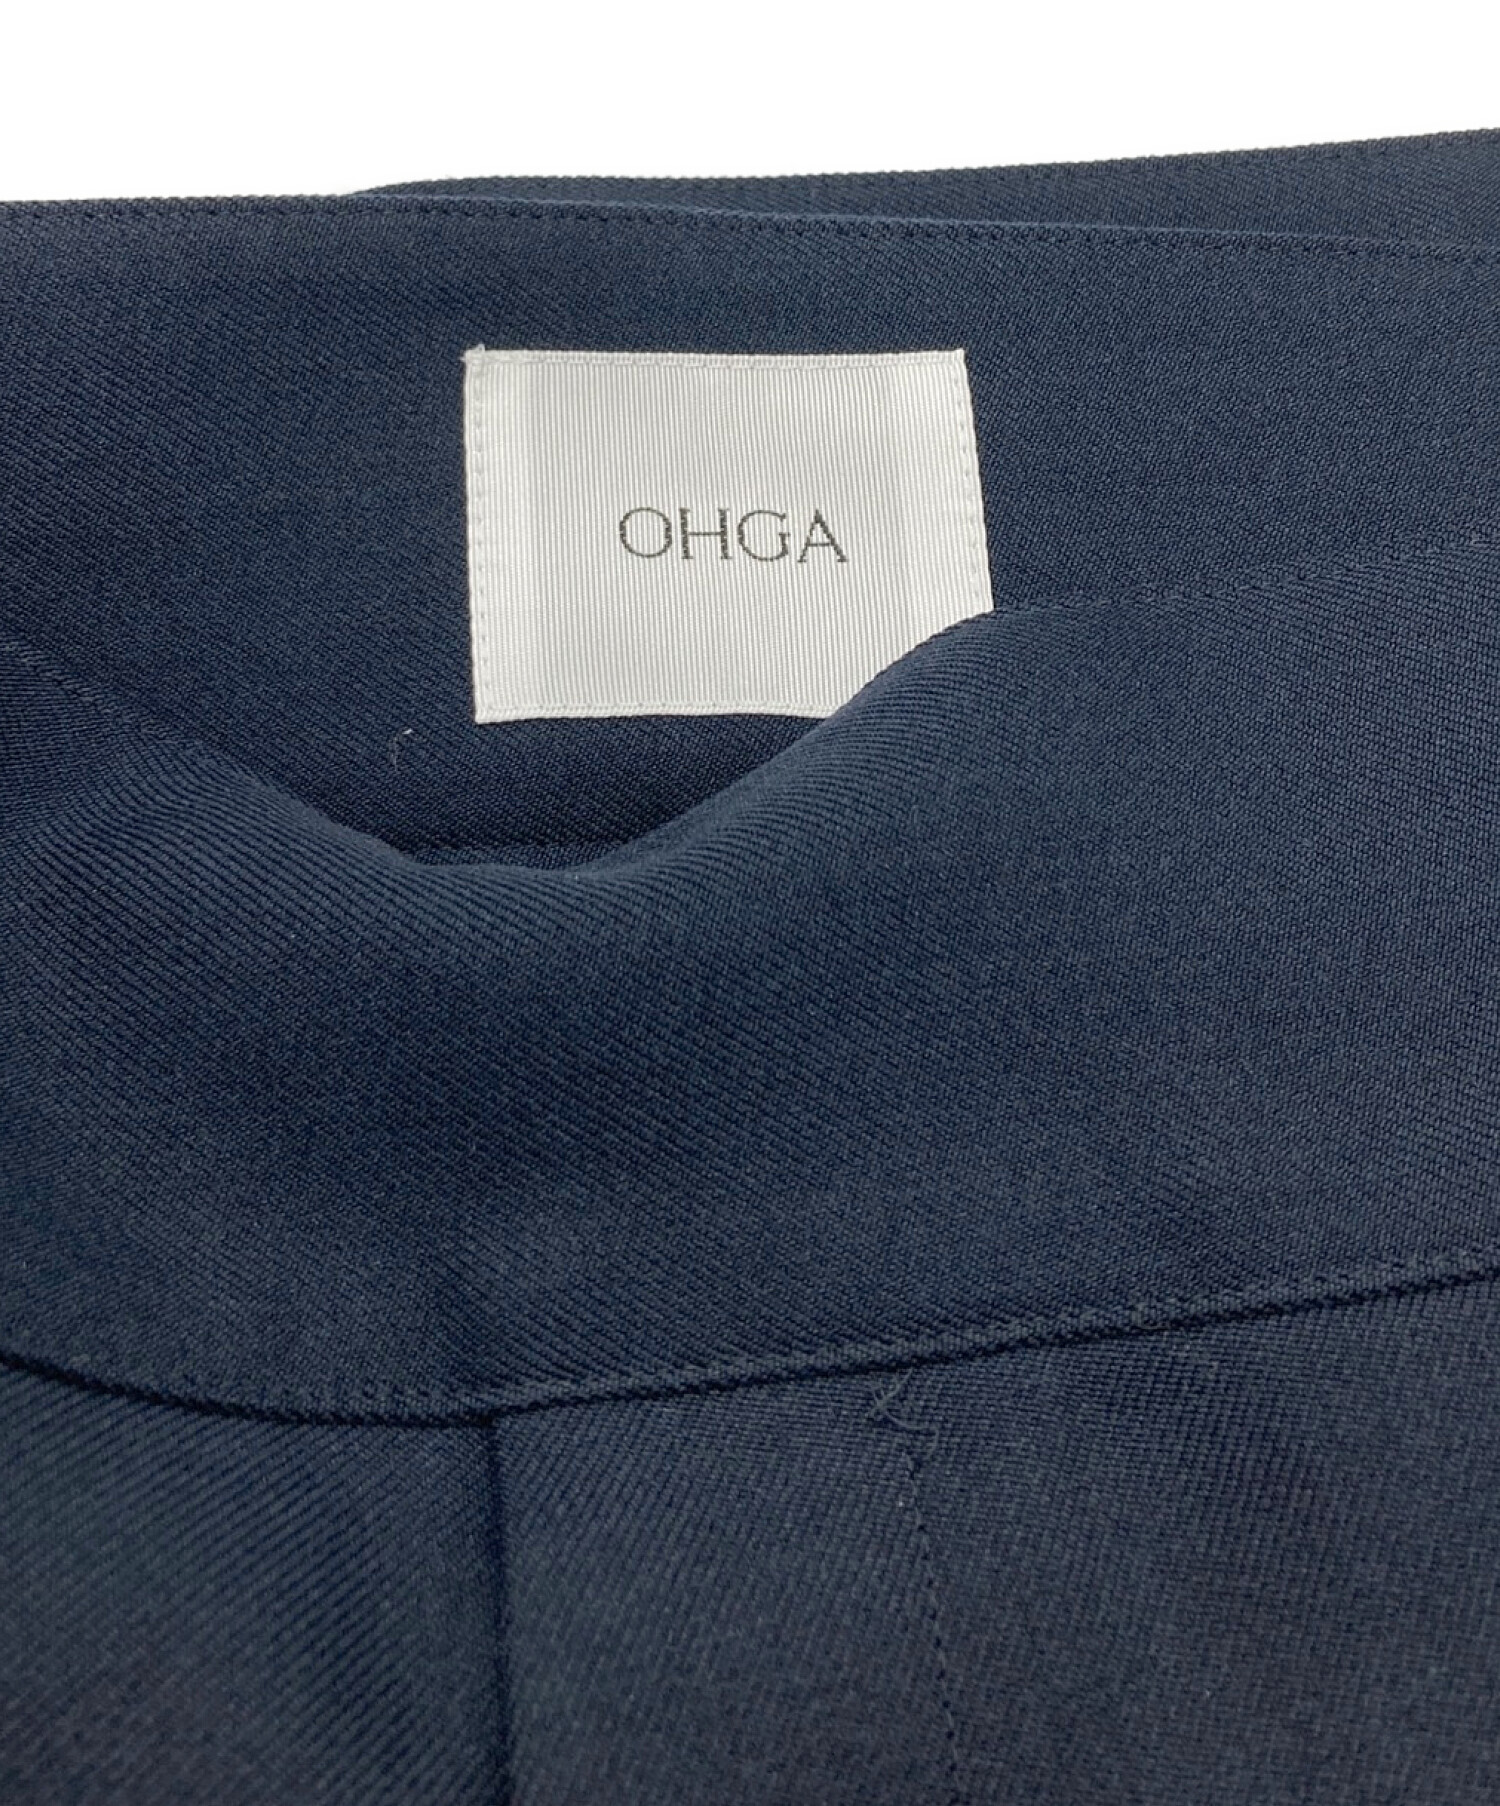 中古・古着通販】OHGA (オオガ) ハイウエストパンツ ネイビー サイズ:M